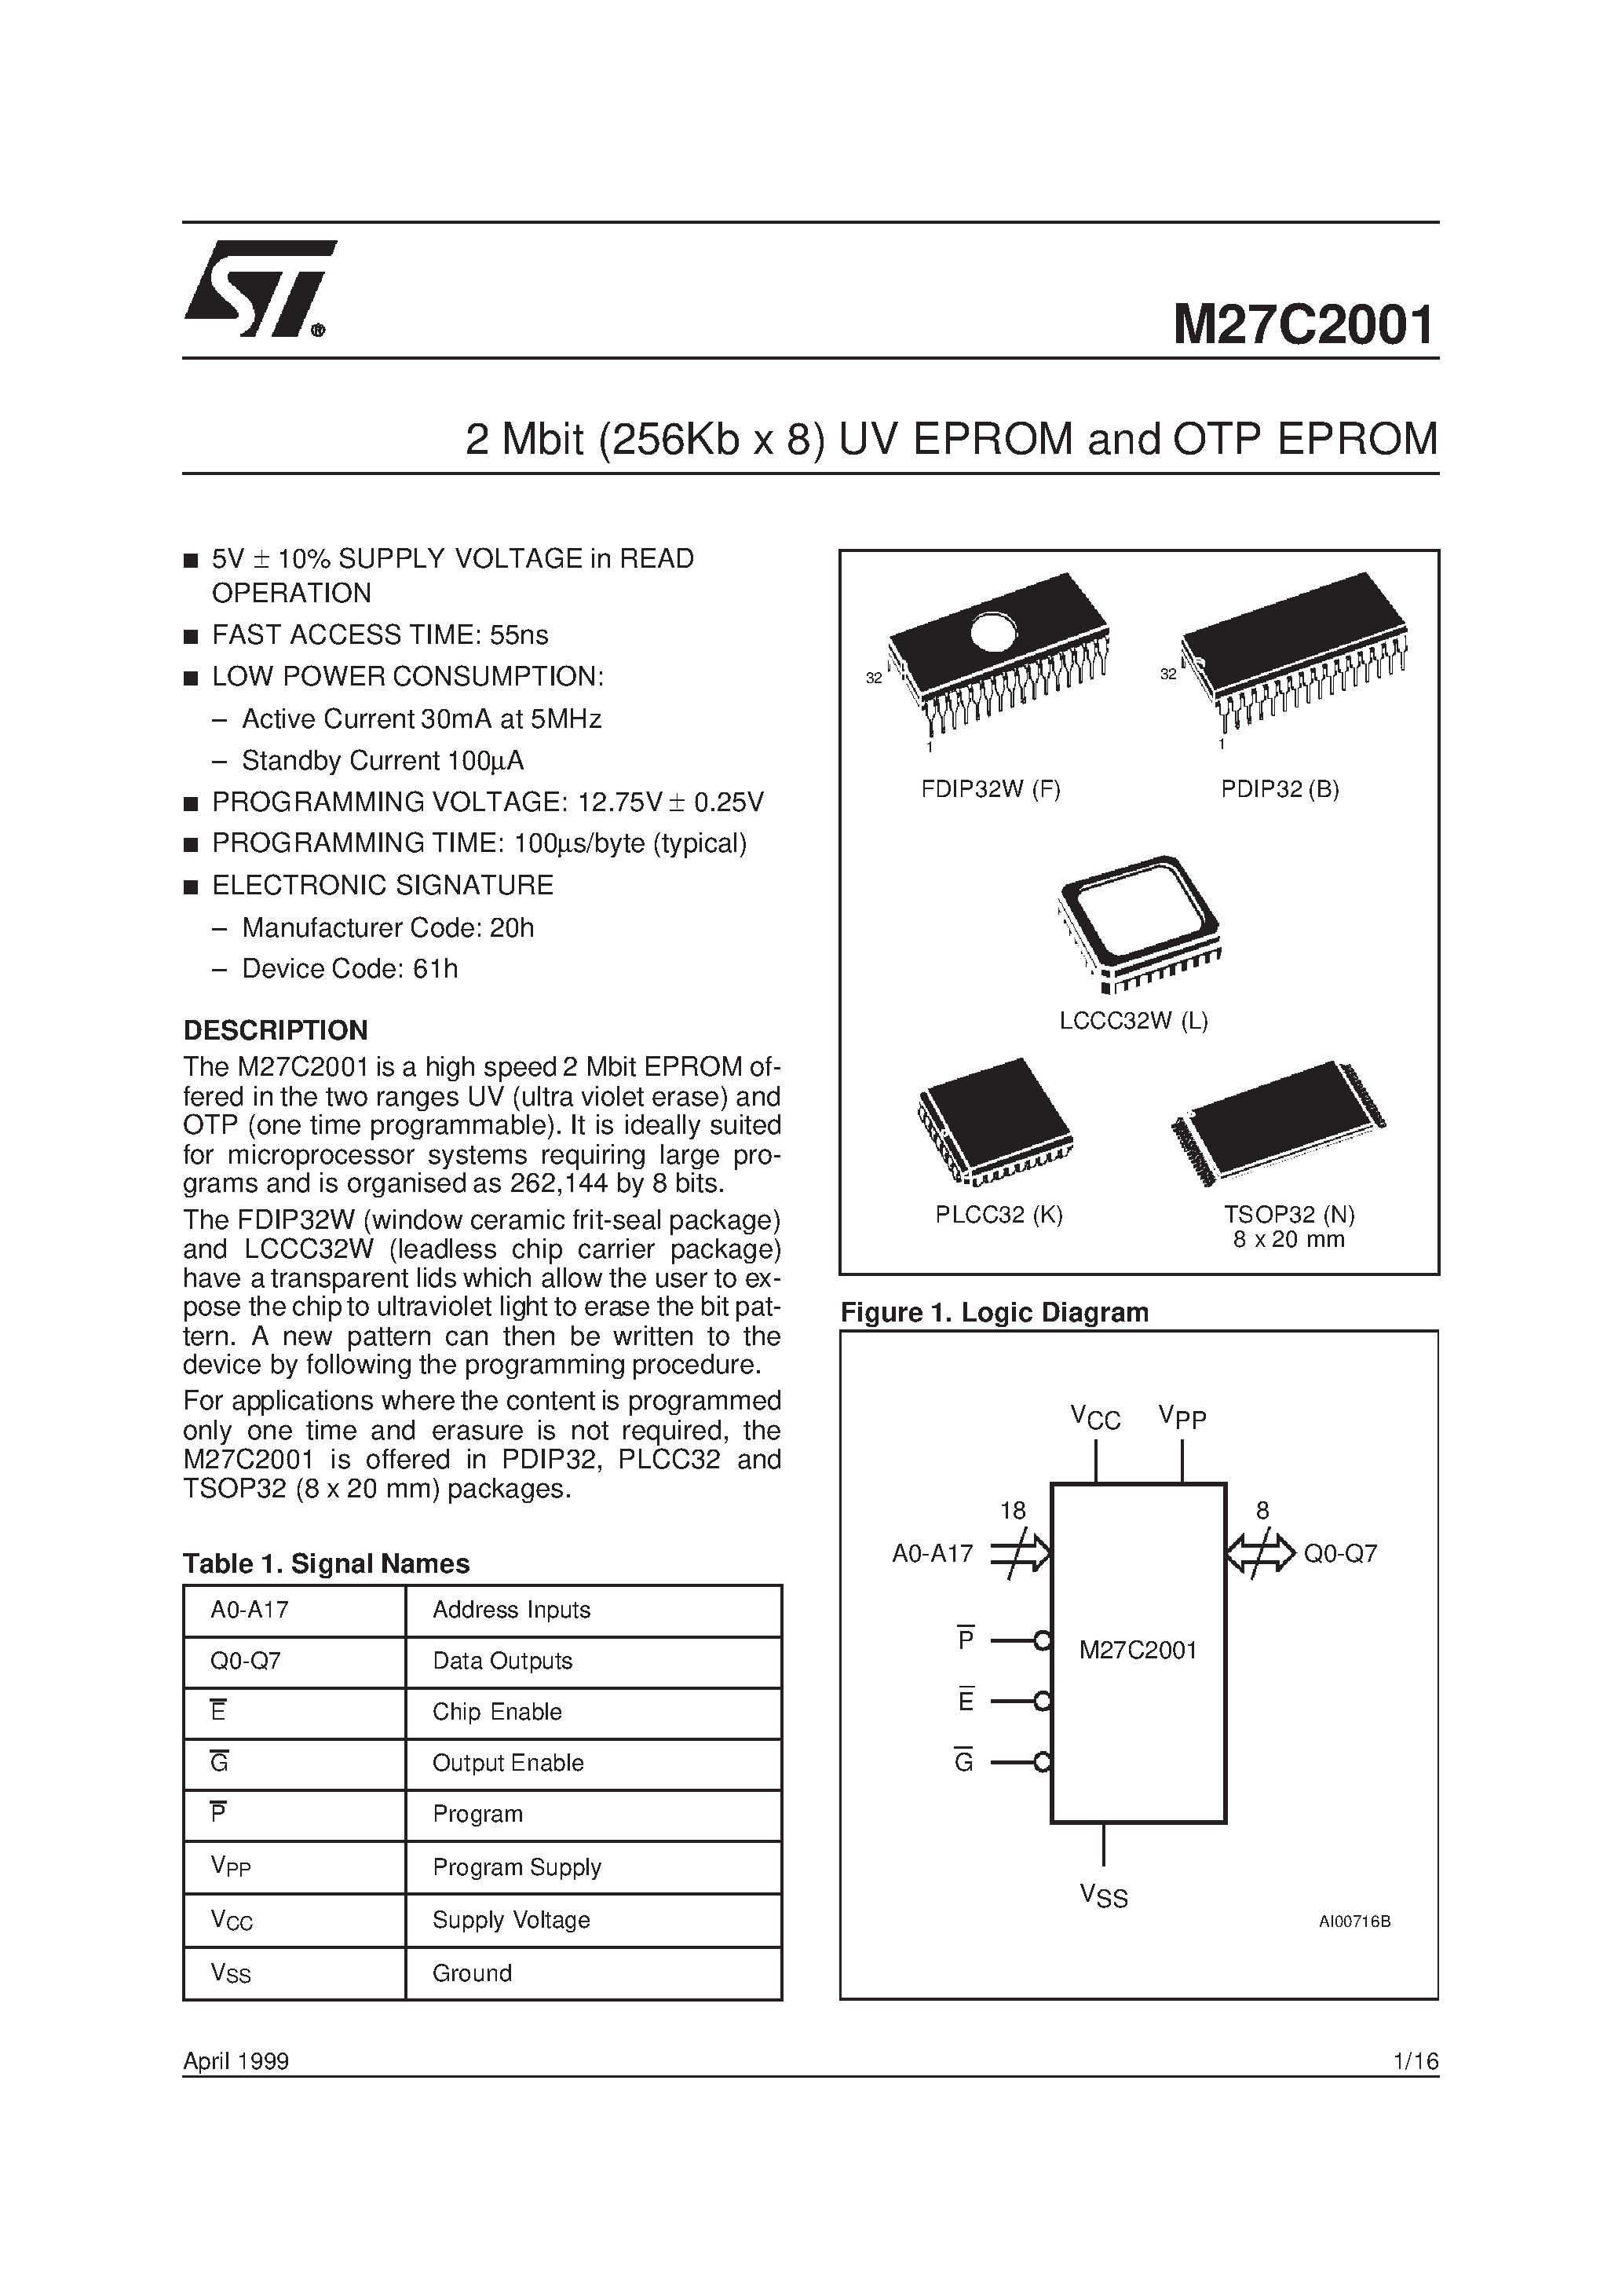 Datasheet M27C2001-10C1X - 2 Mbit 256Kb x 8 UV EPROM and OTP EPROM page 1